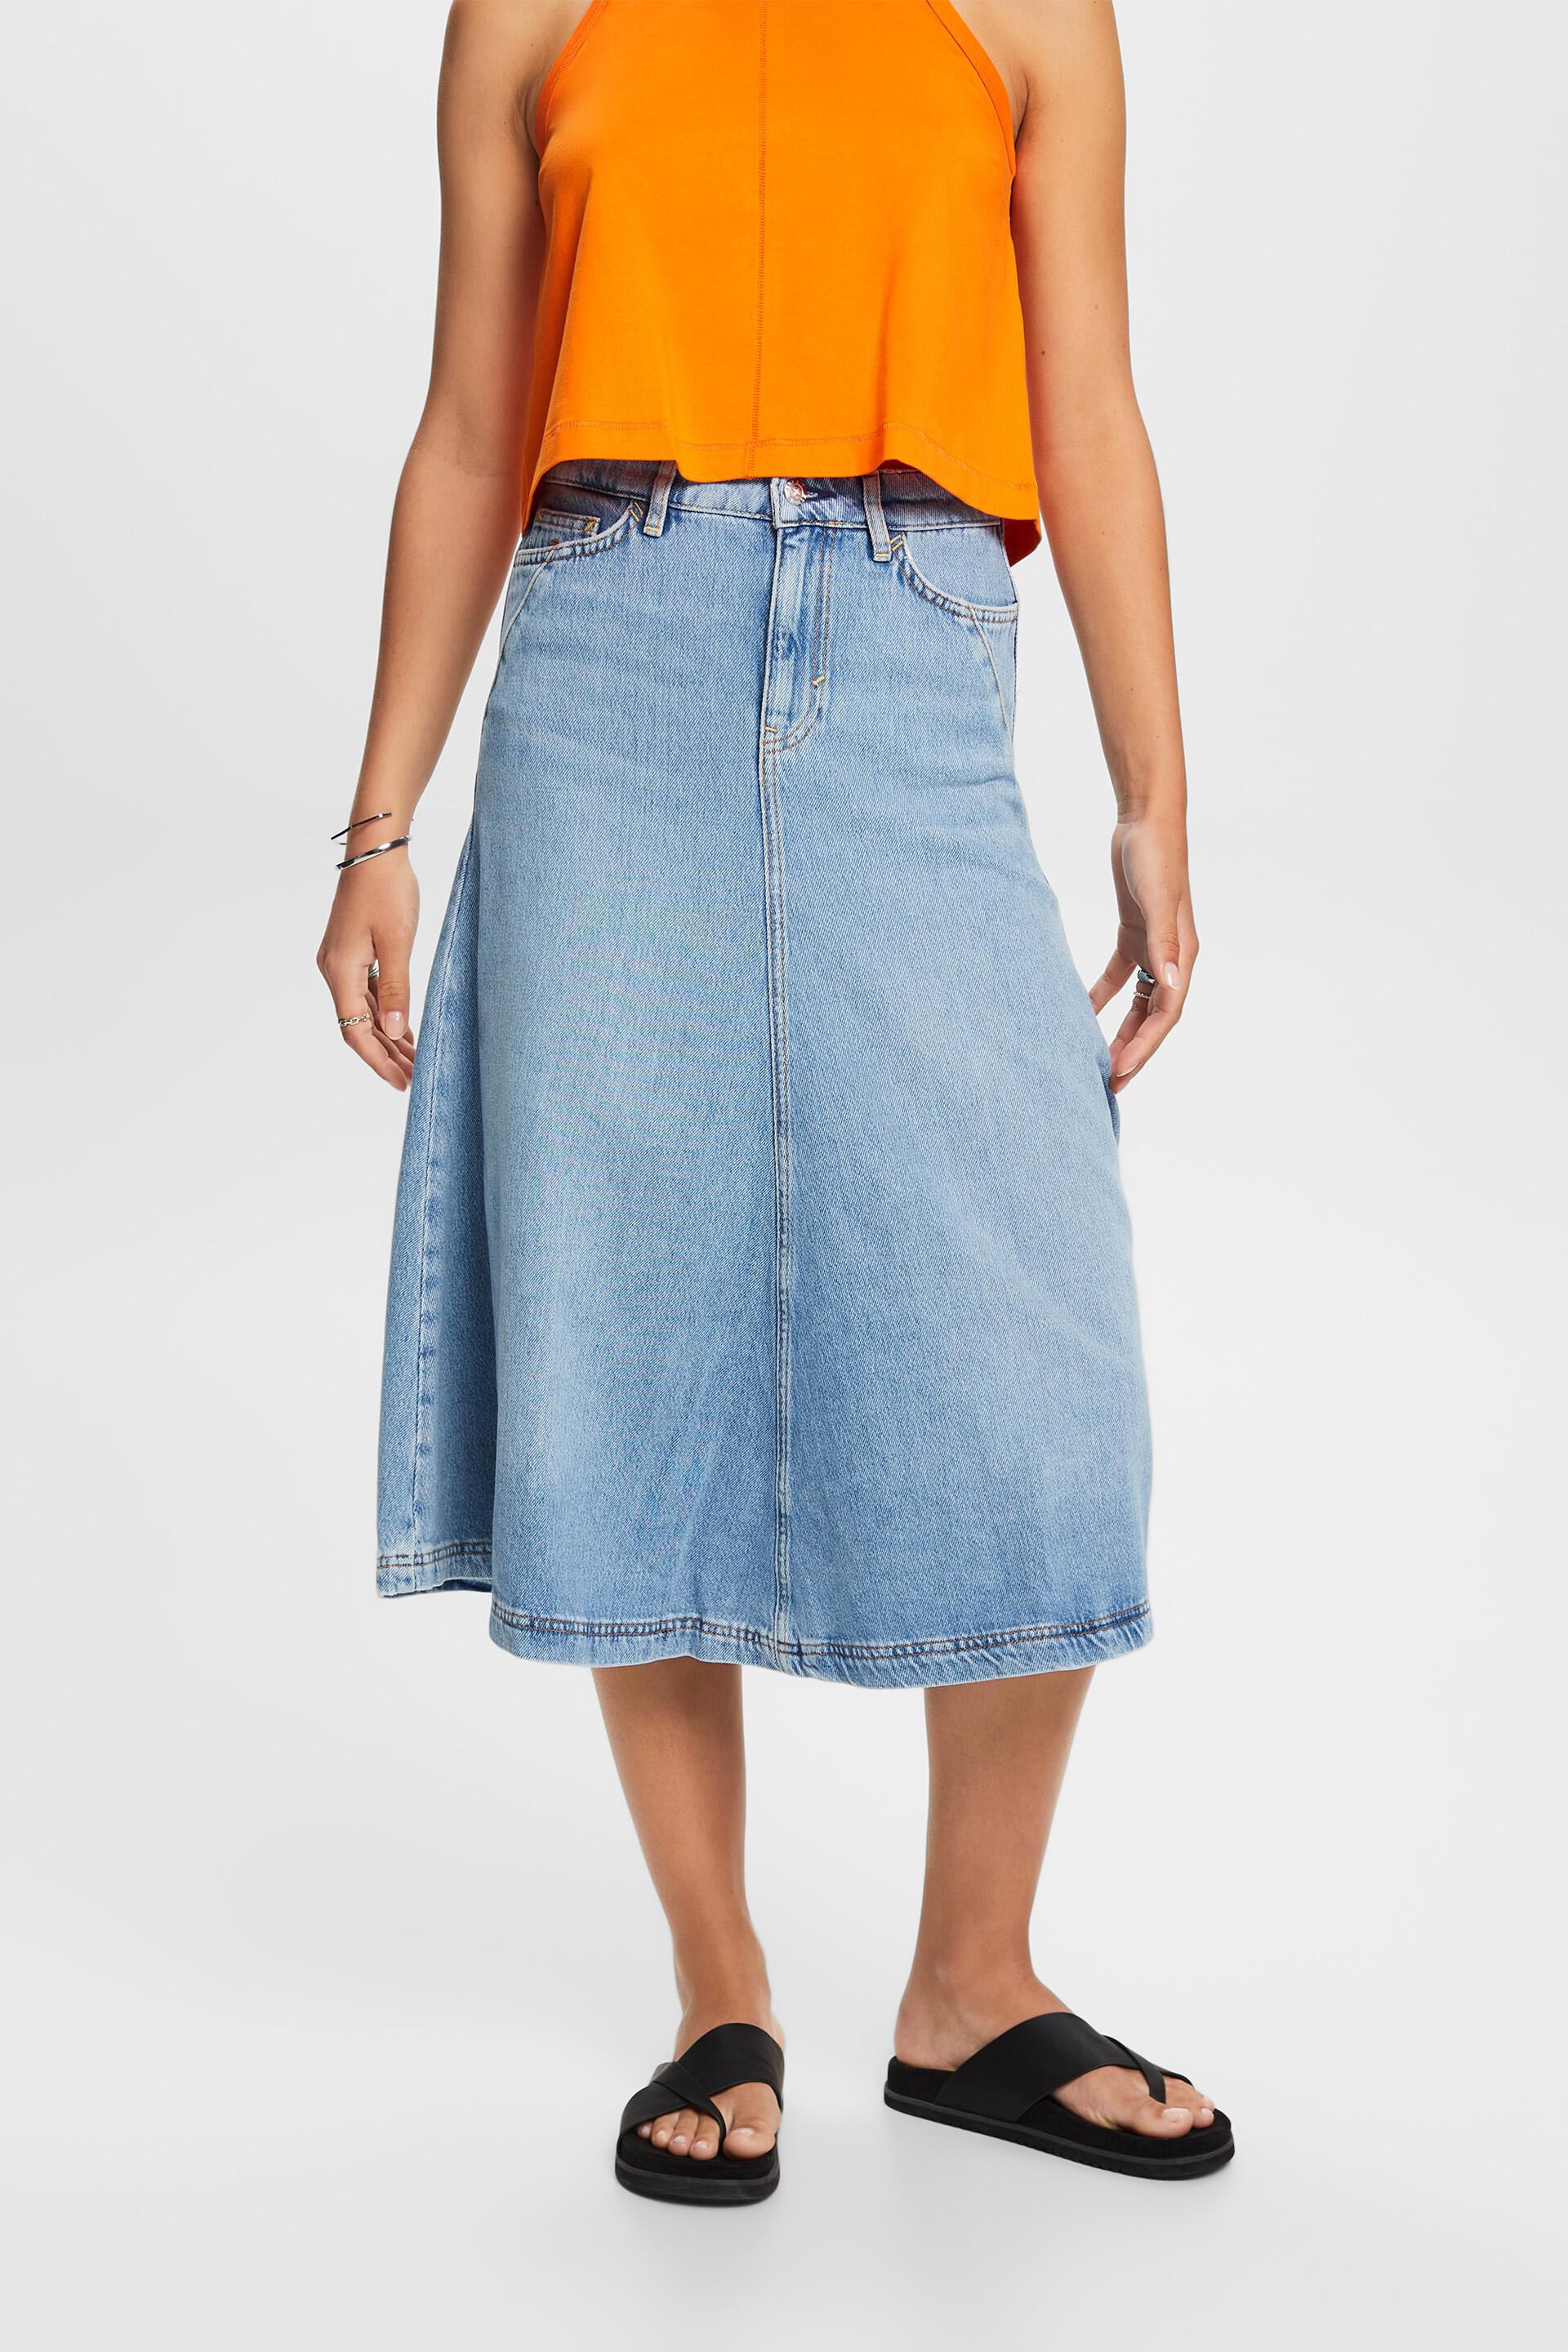 Esprit Jeans skirt, midi cotton blend